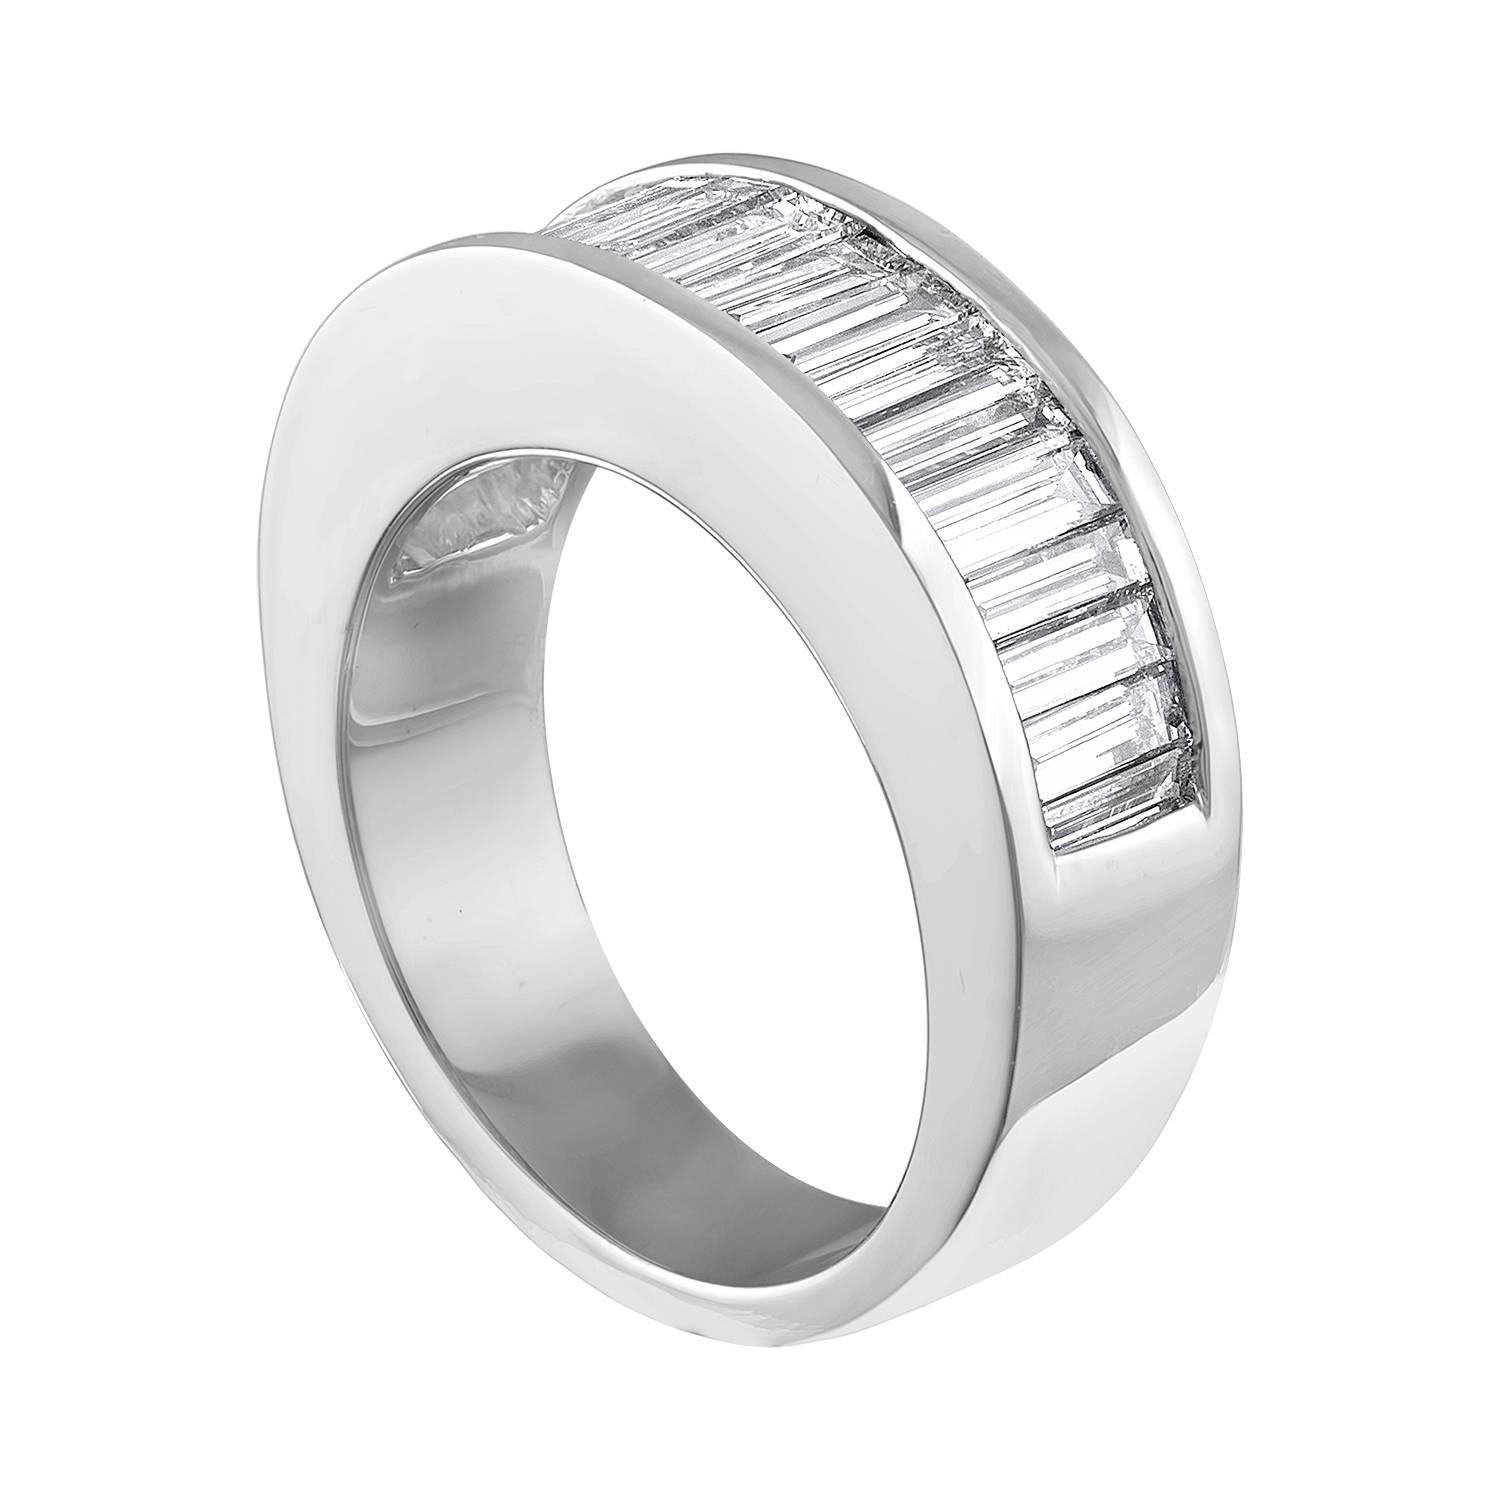 Halbmond Diamant Baguette Ring.
Der Ring ist aus 18K Weißgold.
Es sind 2,00 Karat Diamanten F VS.
Das Band ist 6,4 mm breit und verjüngt sich auf 4,4 mm.
Die Ringgröße ist 4,75, groß.
Der Ring wiegt 8,9 Gramm.